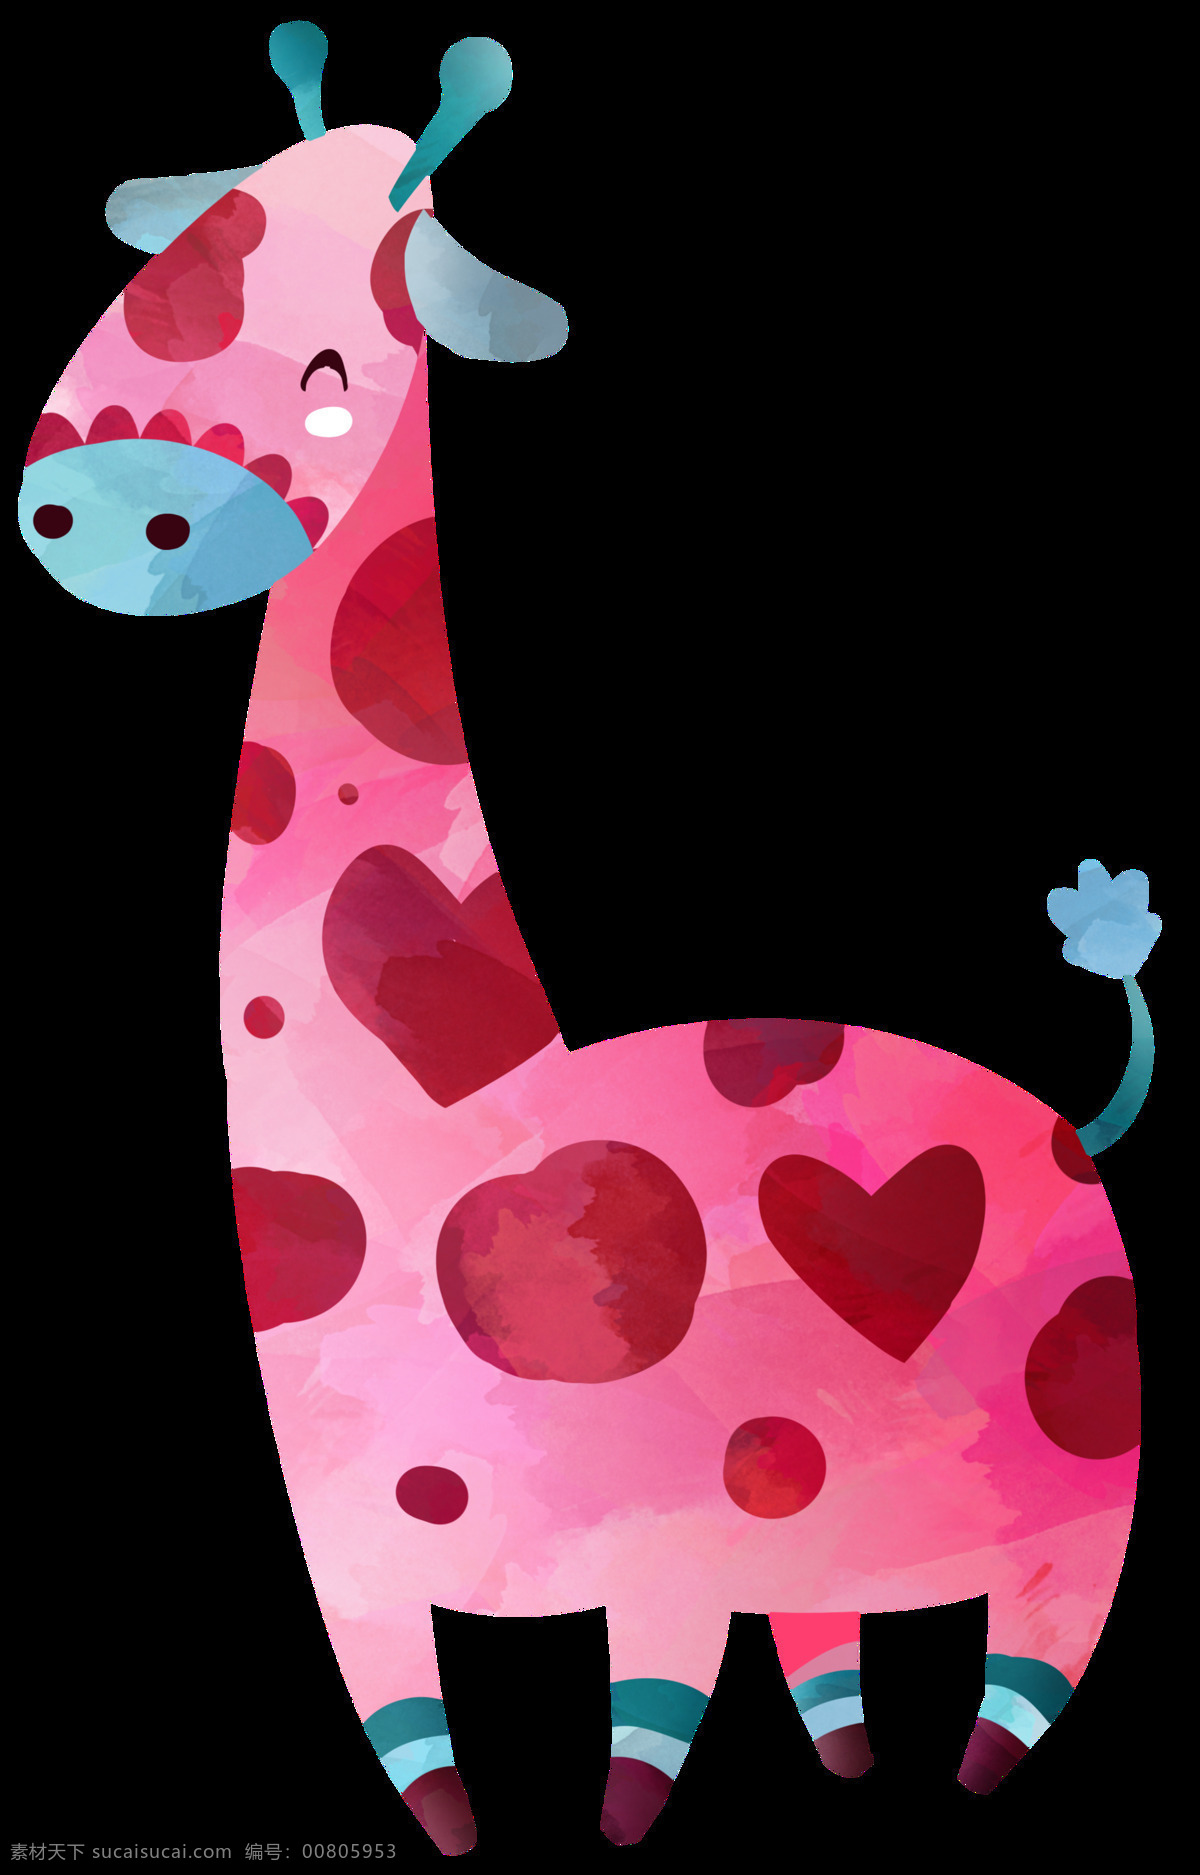 手绘 可爱 的卡 通 动物 透明 粉红色 爱心 小短腿 开心 装饰图案 免扣素材 蓝色